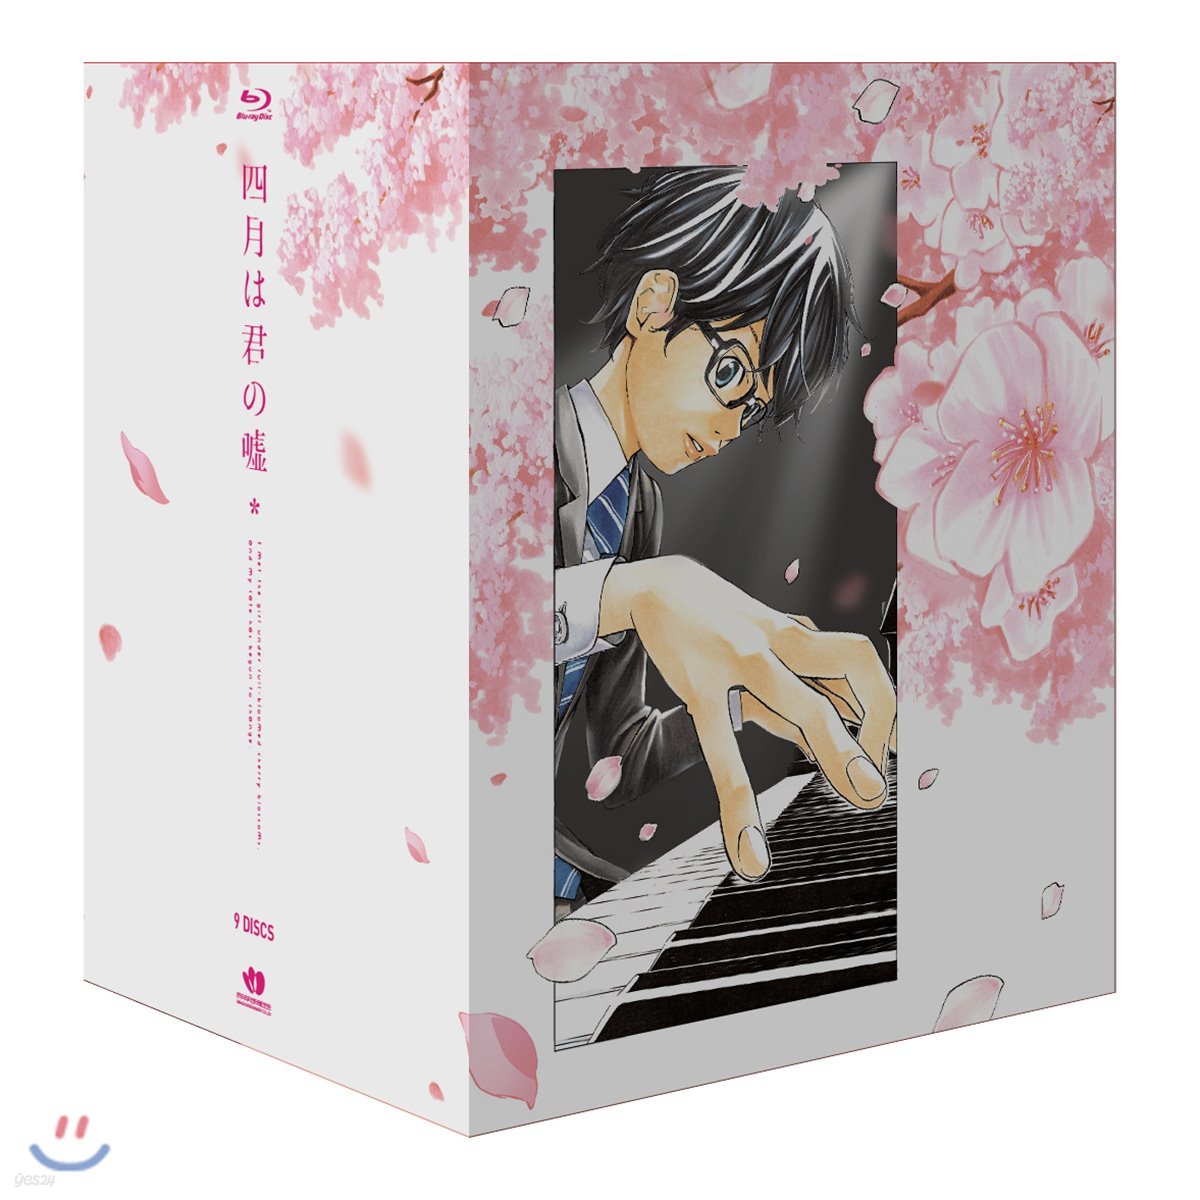 4월은 너의 거짓말 TV시리즈 VOL.1~9 전권 + 우리말 녹음 + 코멘터리 포함 아라카와 나오시 일러스트 박스 에디션 (Arakawa Naoshi Illust Box Edition 9Disc) : 블루레이